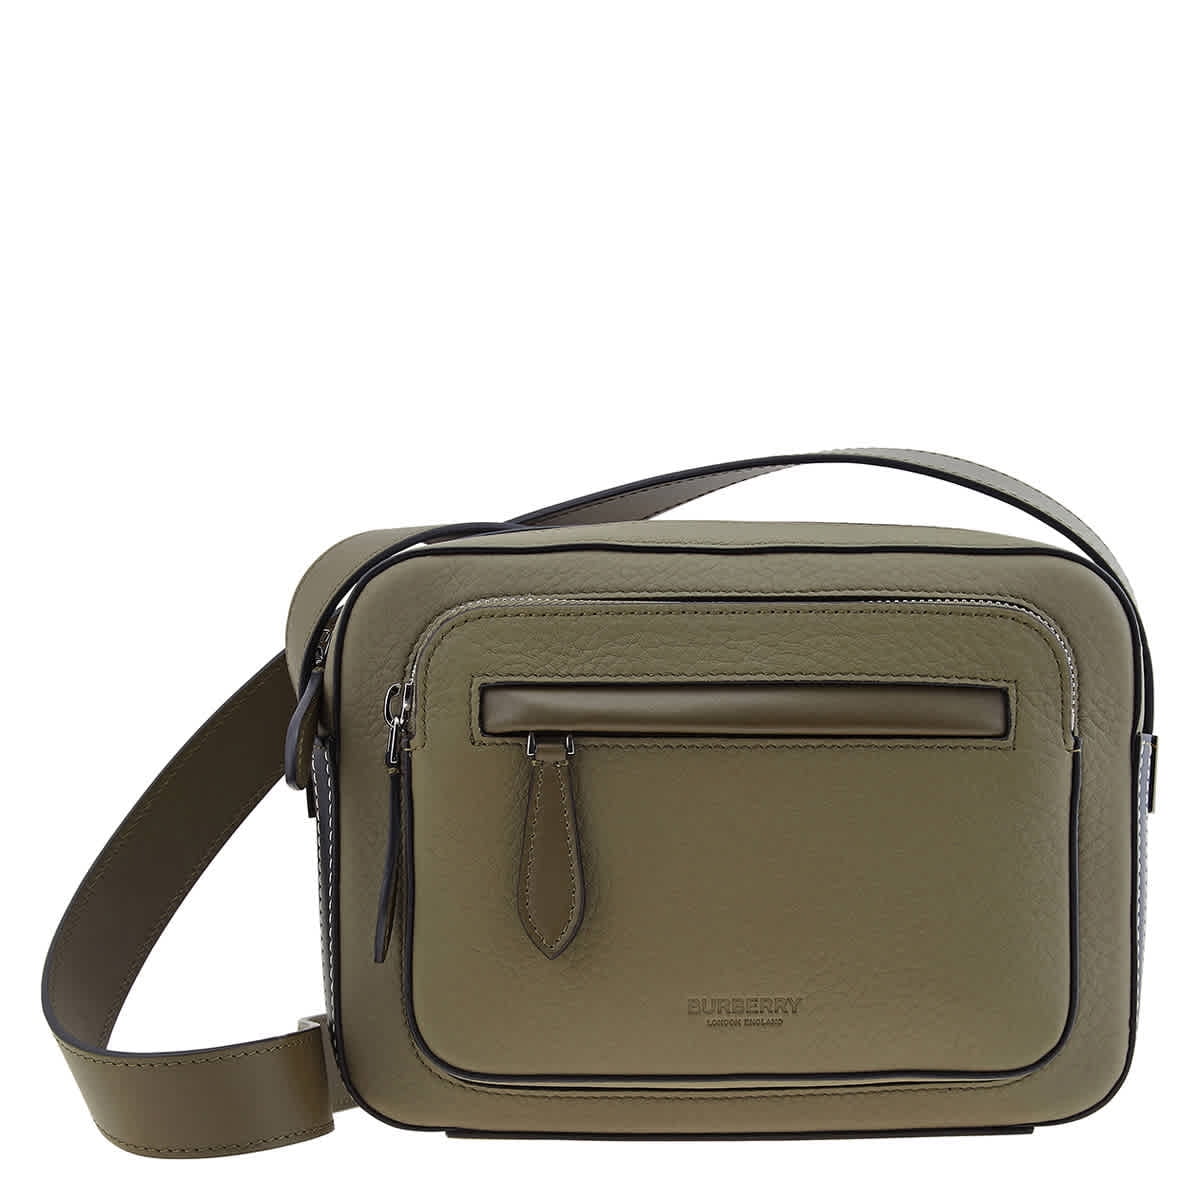 Burberry, Bags, Sold Burberry Sling Bag Crossbody Bag Or Shoulder Bag